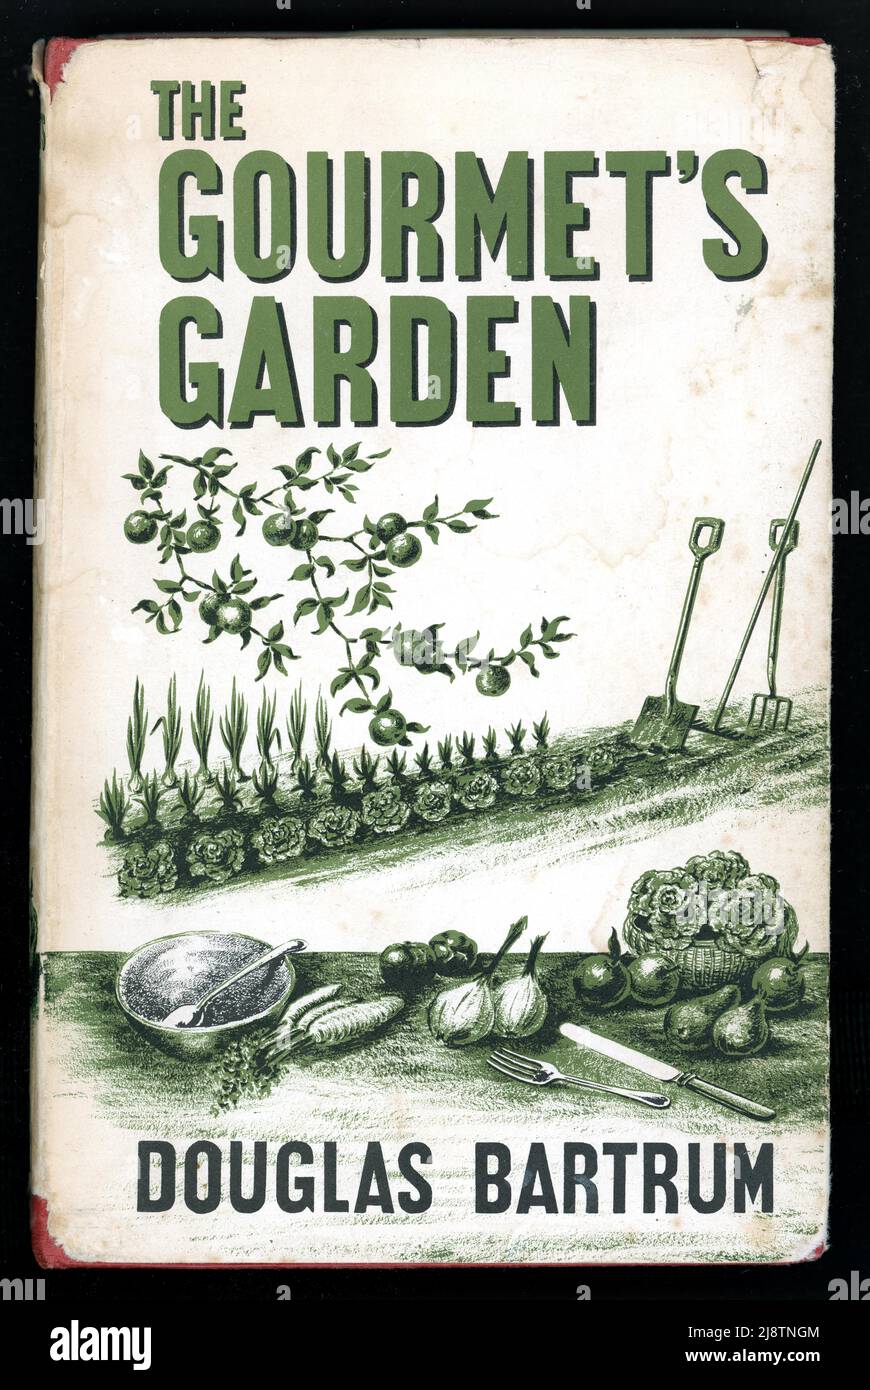 Exemplaire original du jardin du Gourmet de Douglas Bartram, illustré par Richard Shirley Smitth, publié par le Garden Book Club Edition, 1964, Londres, Royaume-Uni Banque D'Images